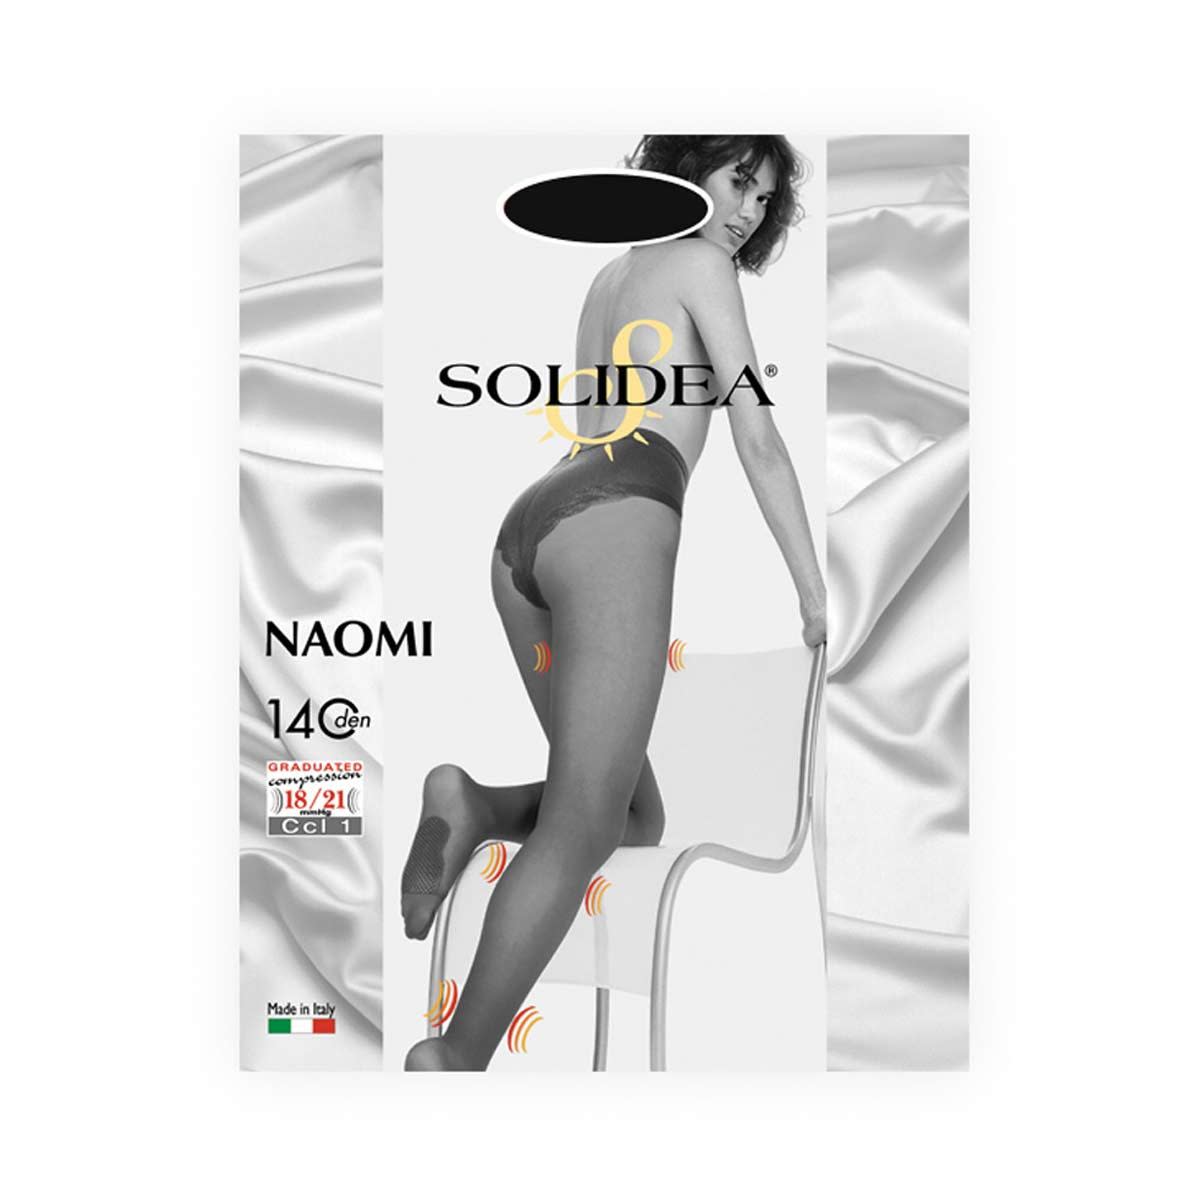 902243765 - Solidea Naomi 140 Collant Contenitivo Nero taglia 3 - 4705893_2.jpg